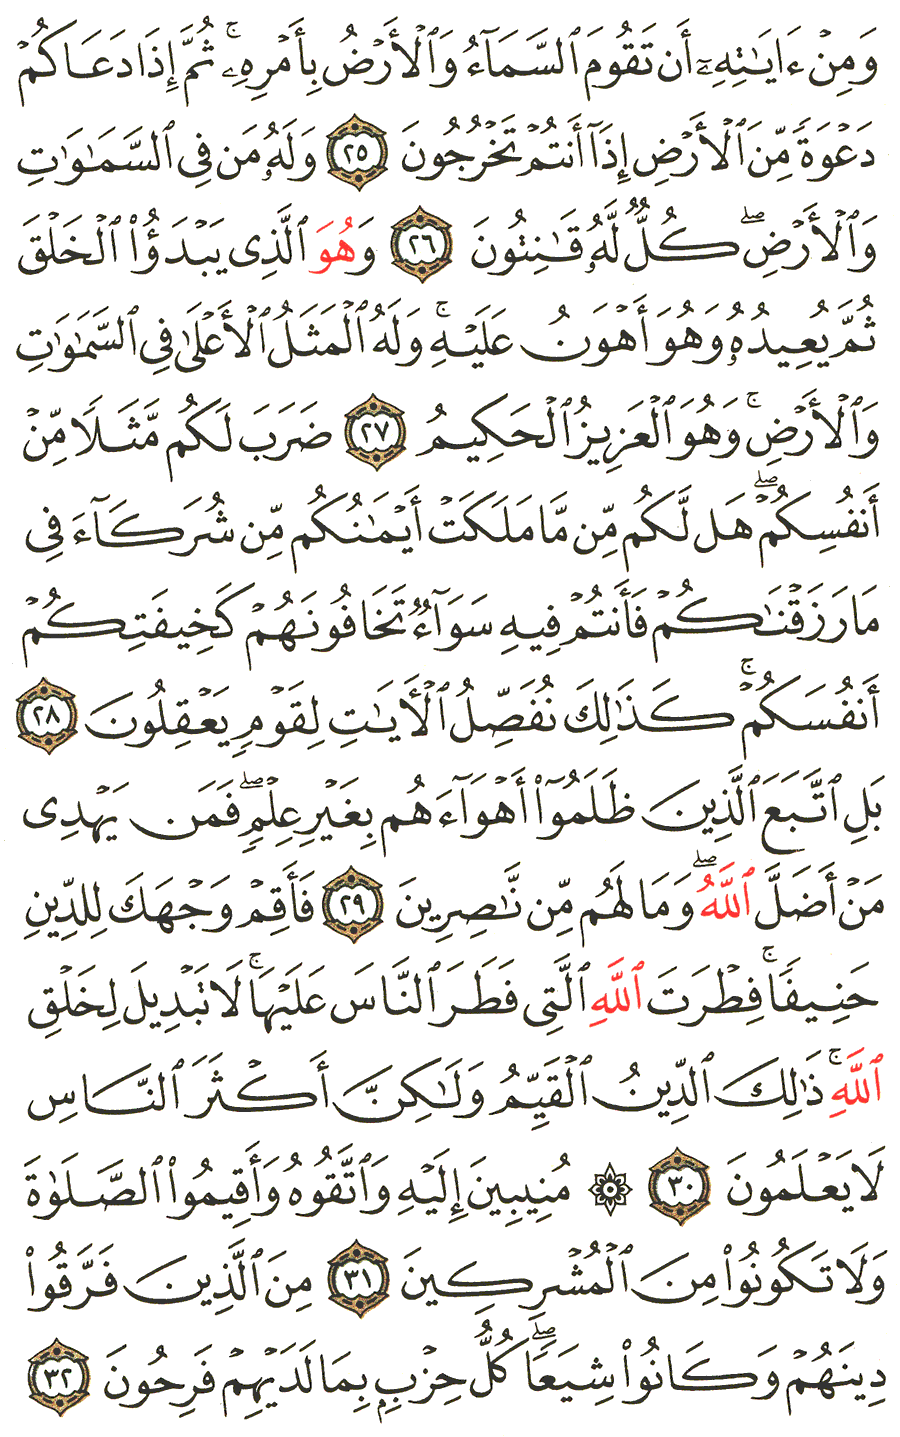 الصفحة 407 من القرآن الكريم